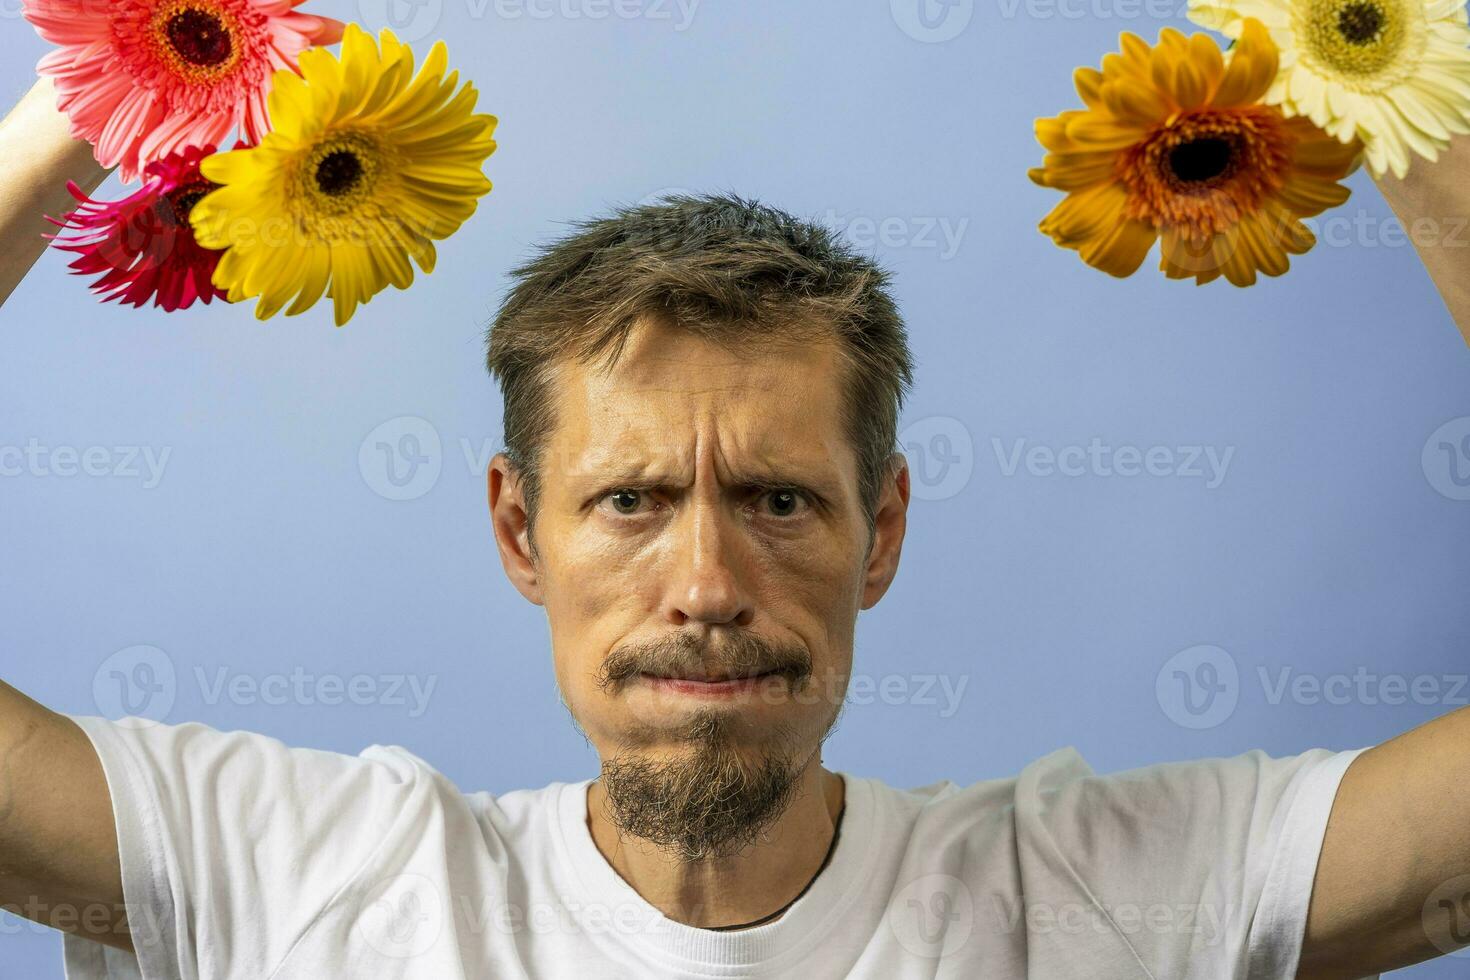 ett arg, irriterad man i en vit t-shirt skakningar och gungor blommor foto